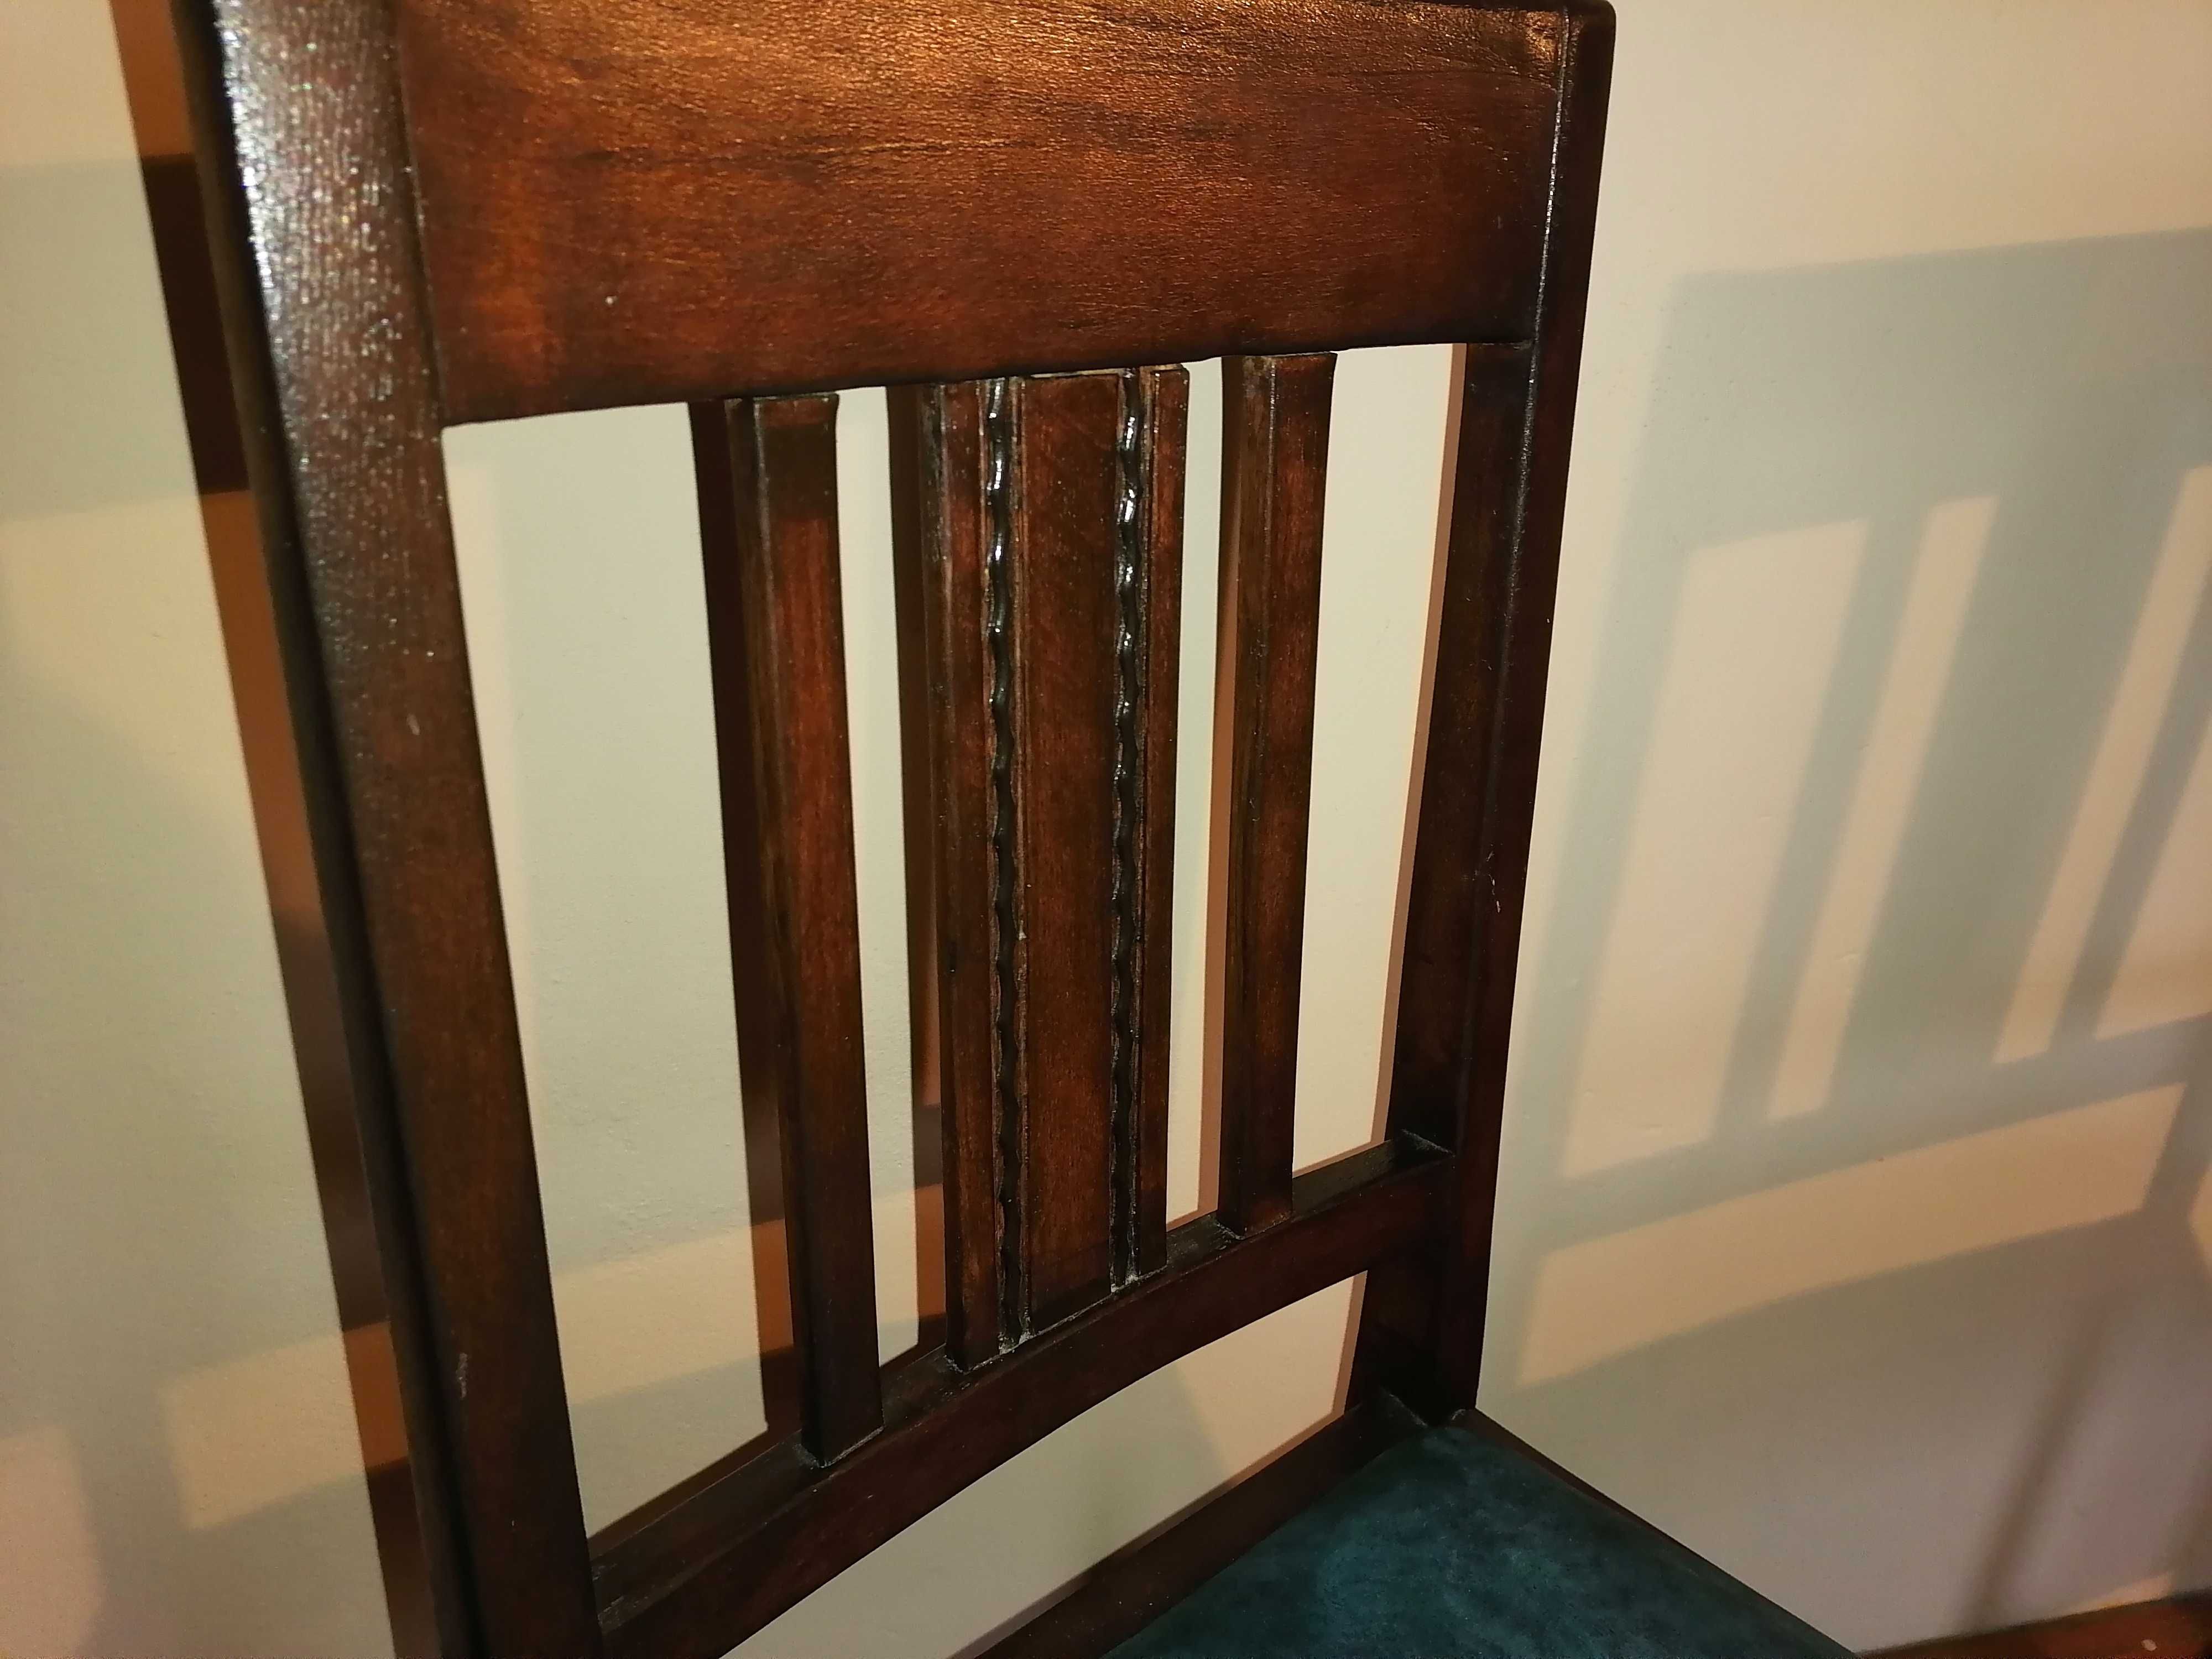 Komplet stylowych drewnianych krzeseł